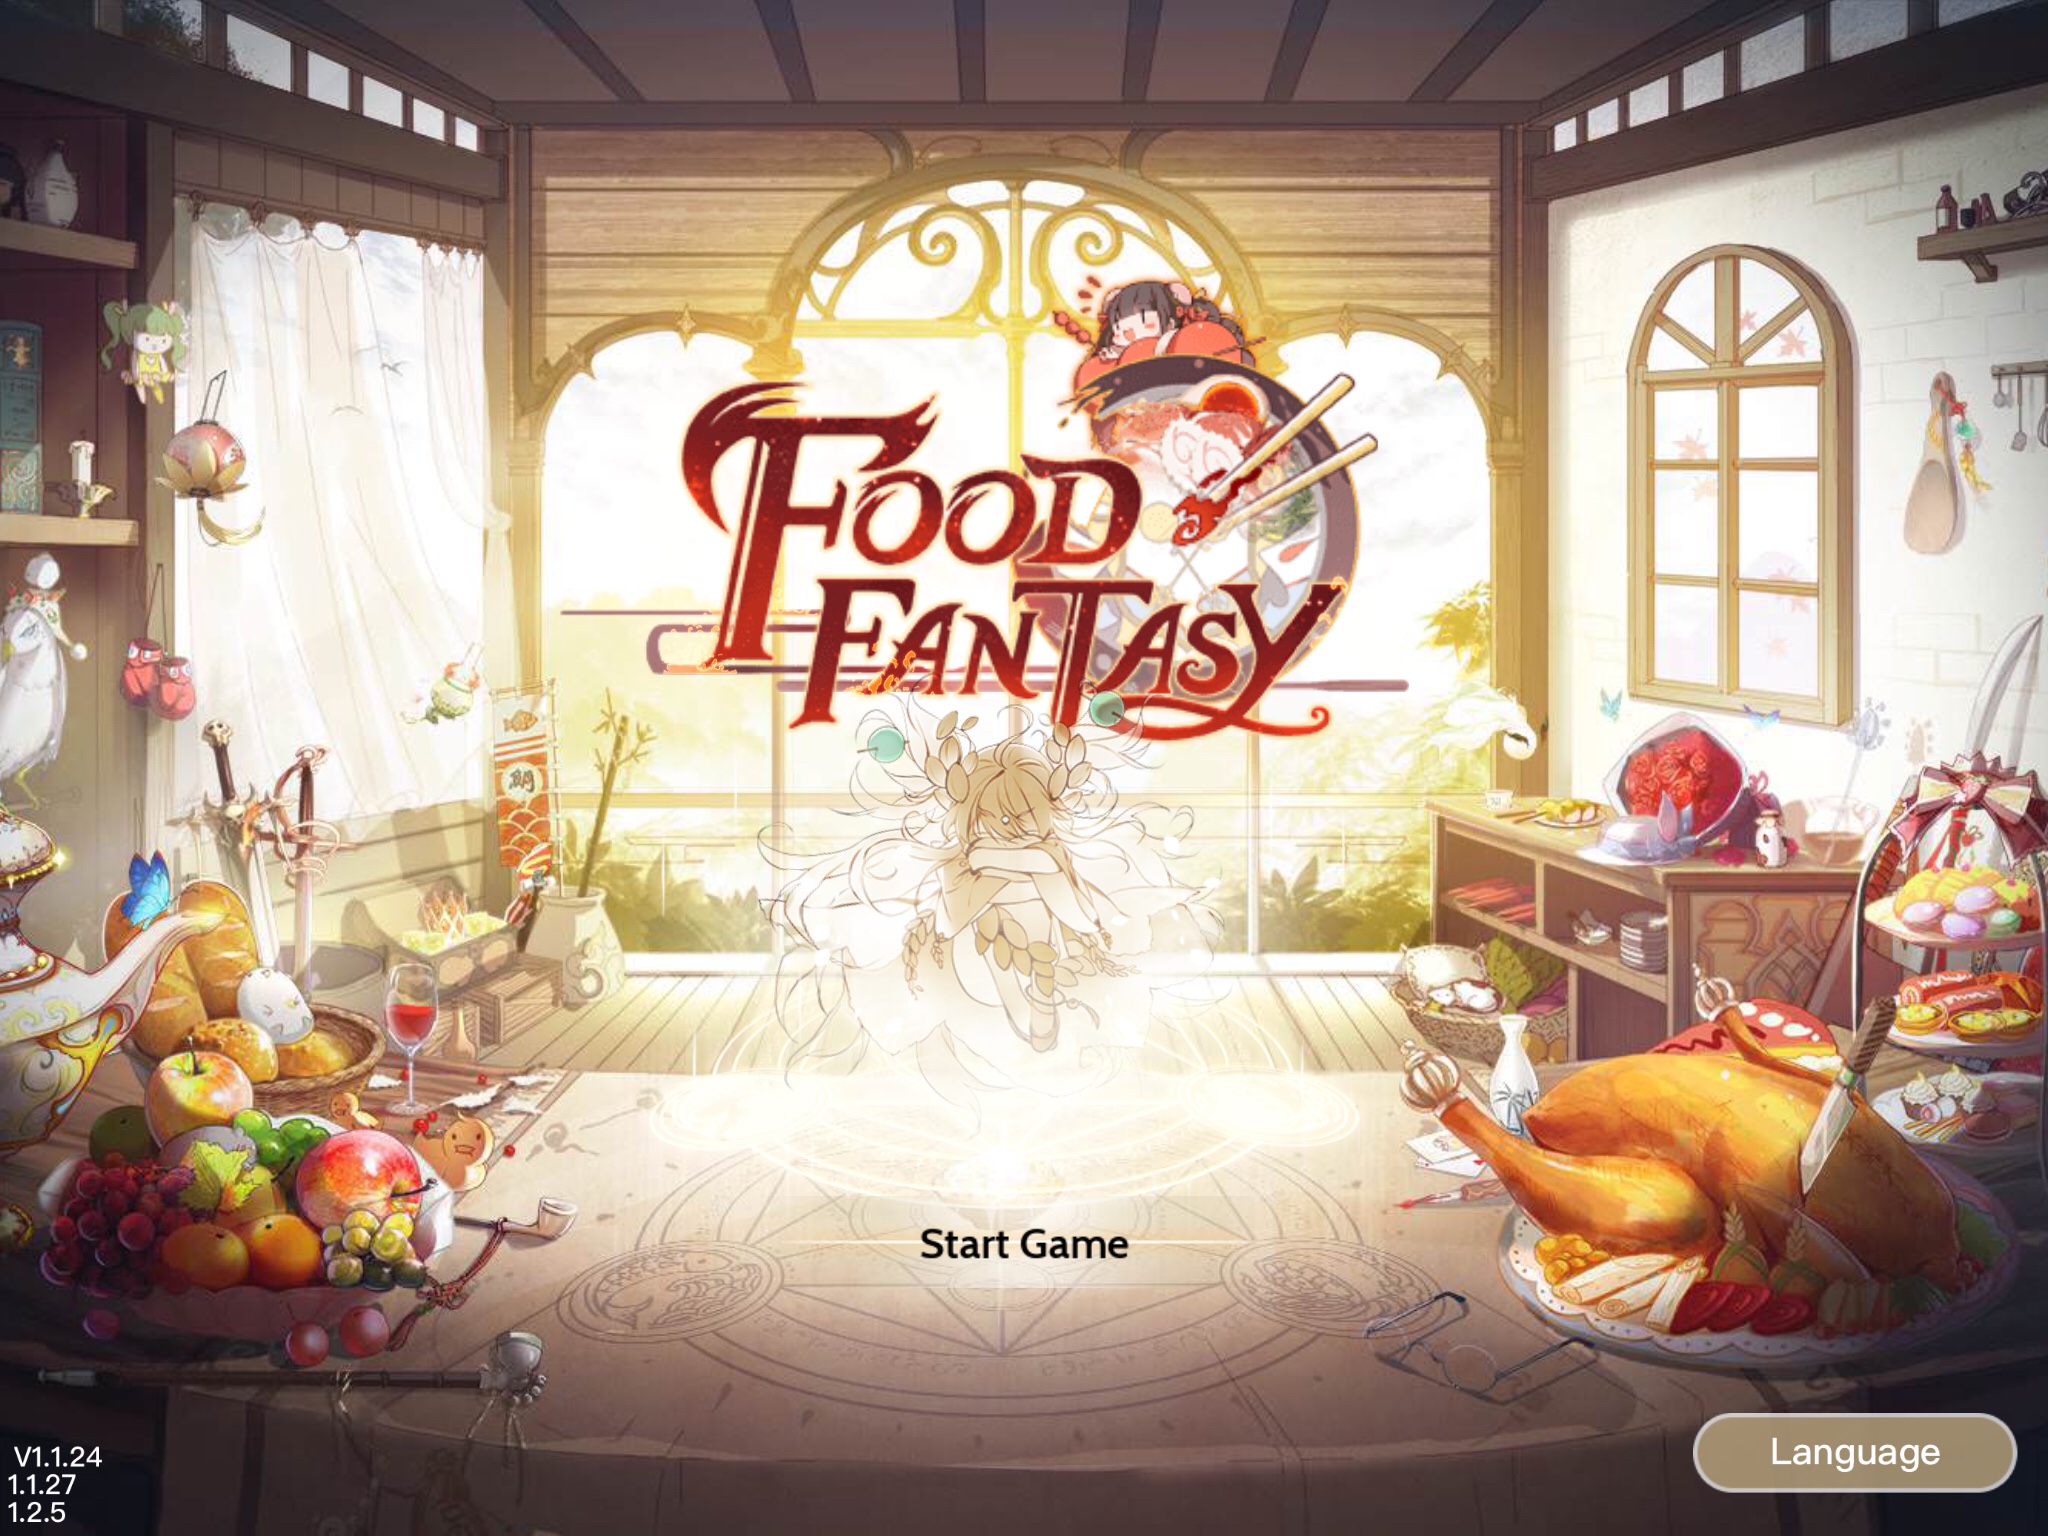 Food Fantasy Game Review